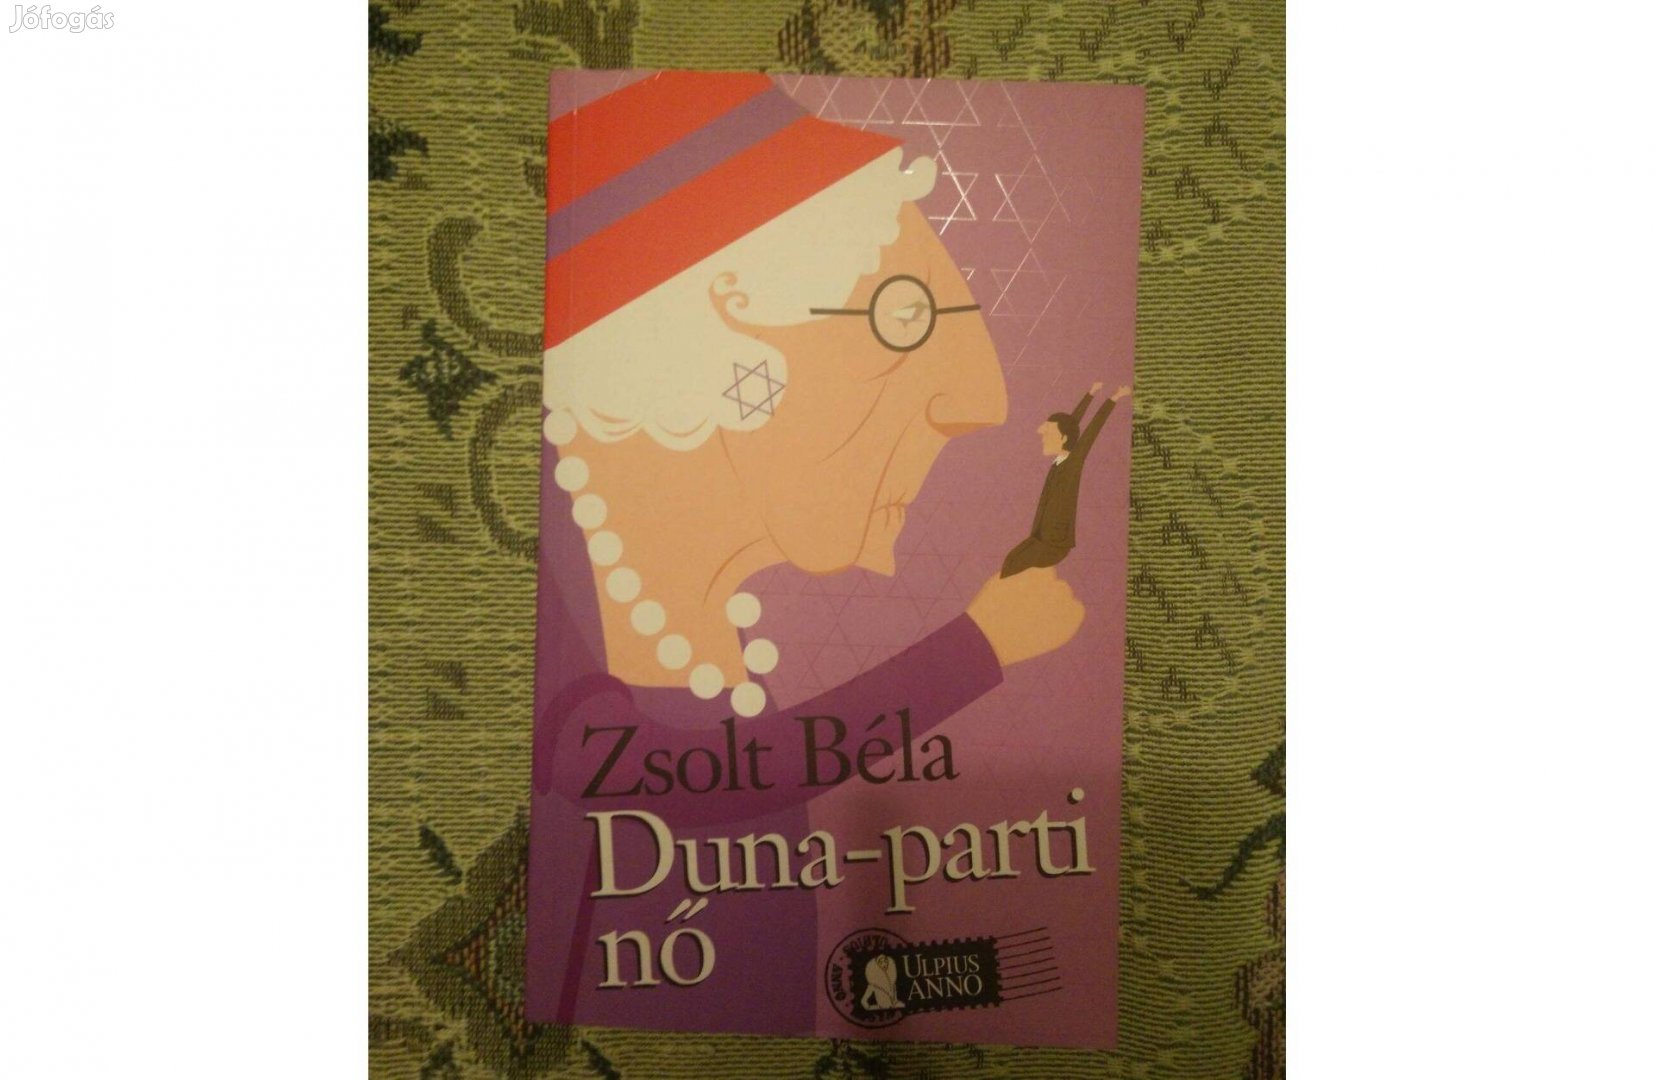 Zsolt Béla Duna-parti nő című könyv